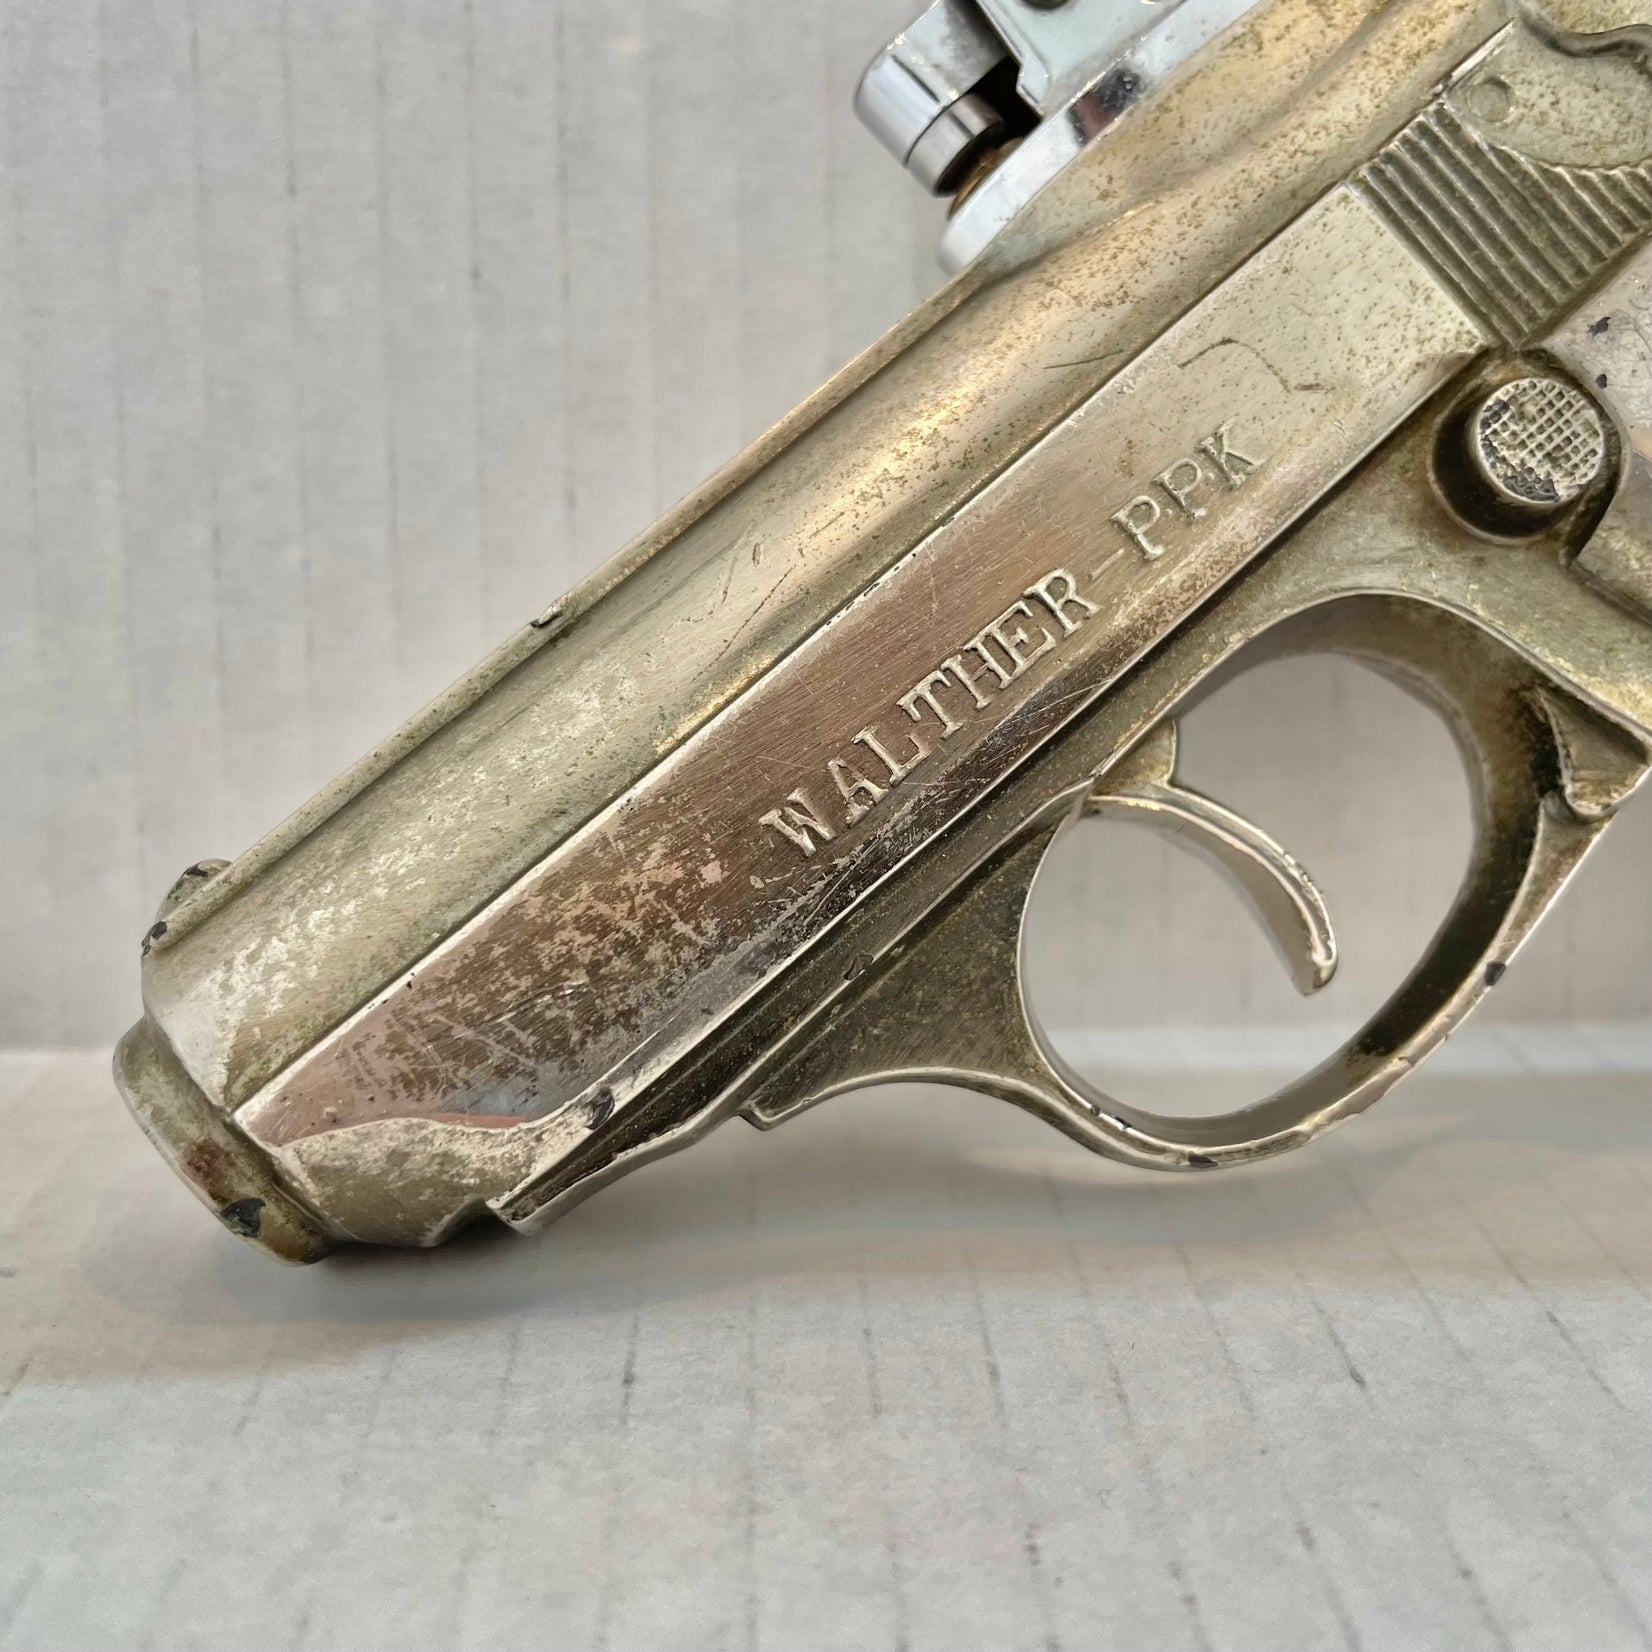 Walther PPK Lighter, 1980s Japan